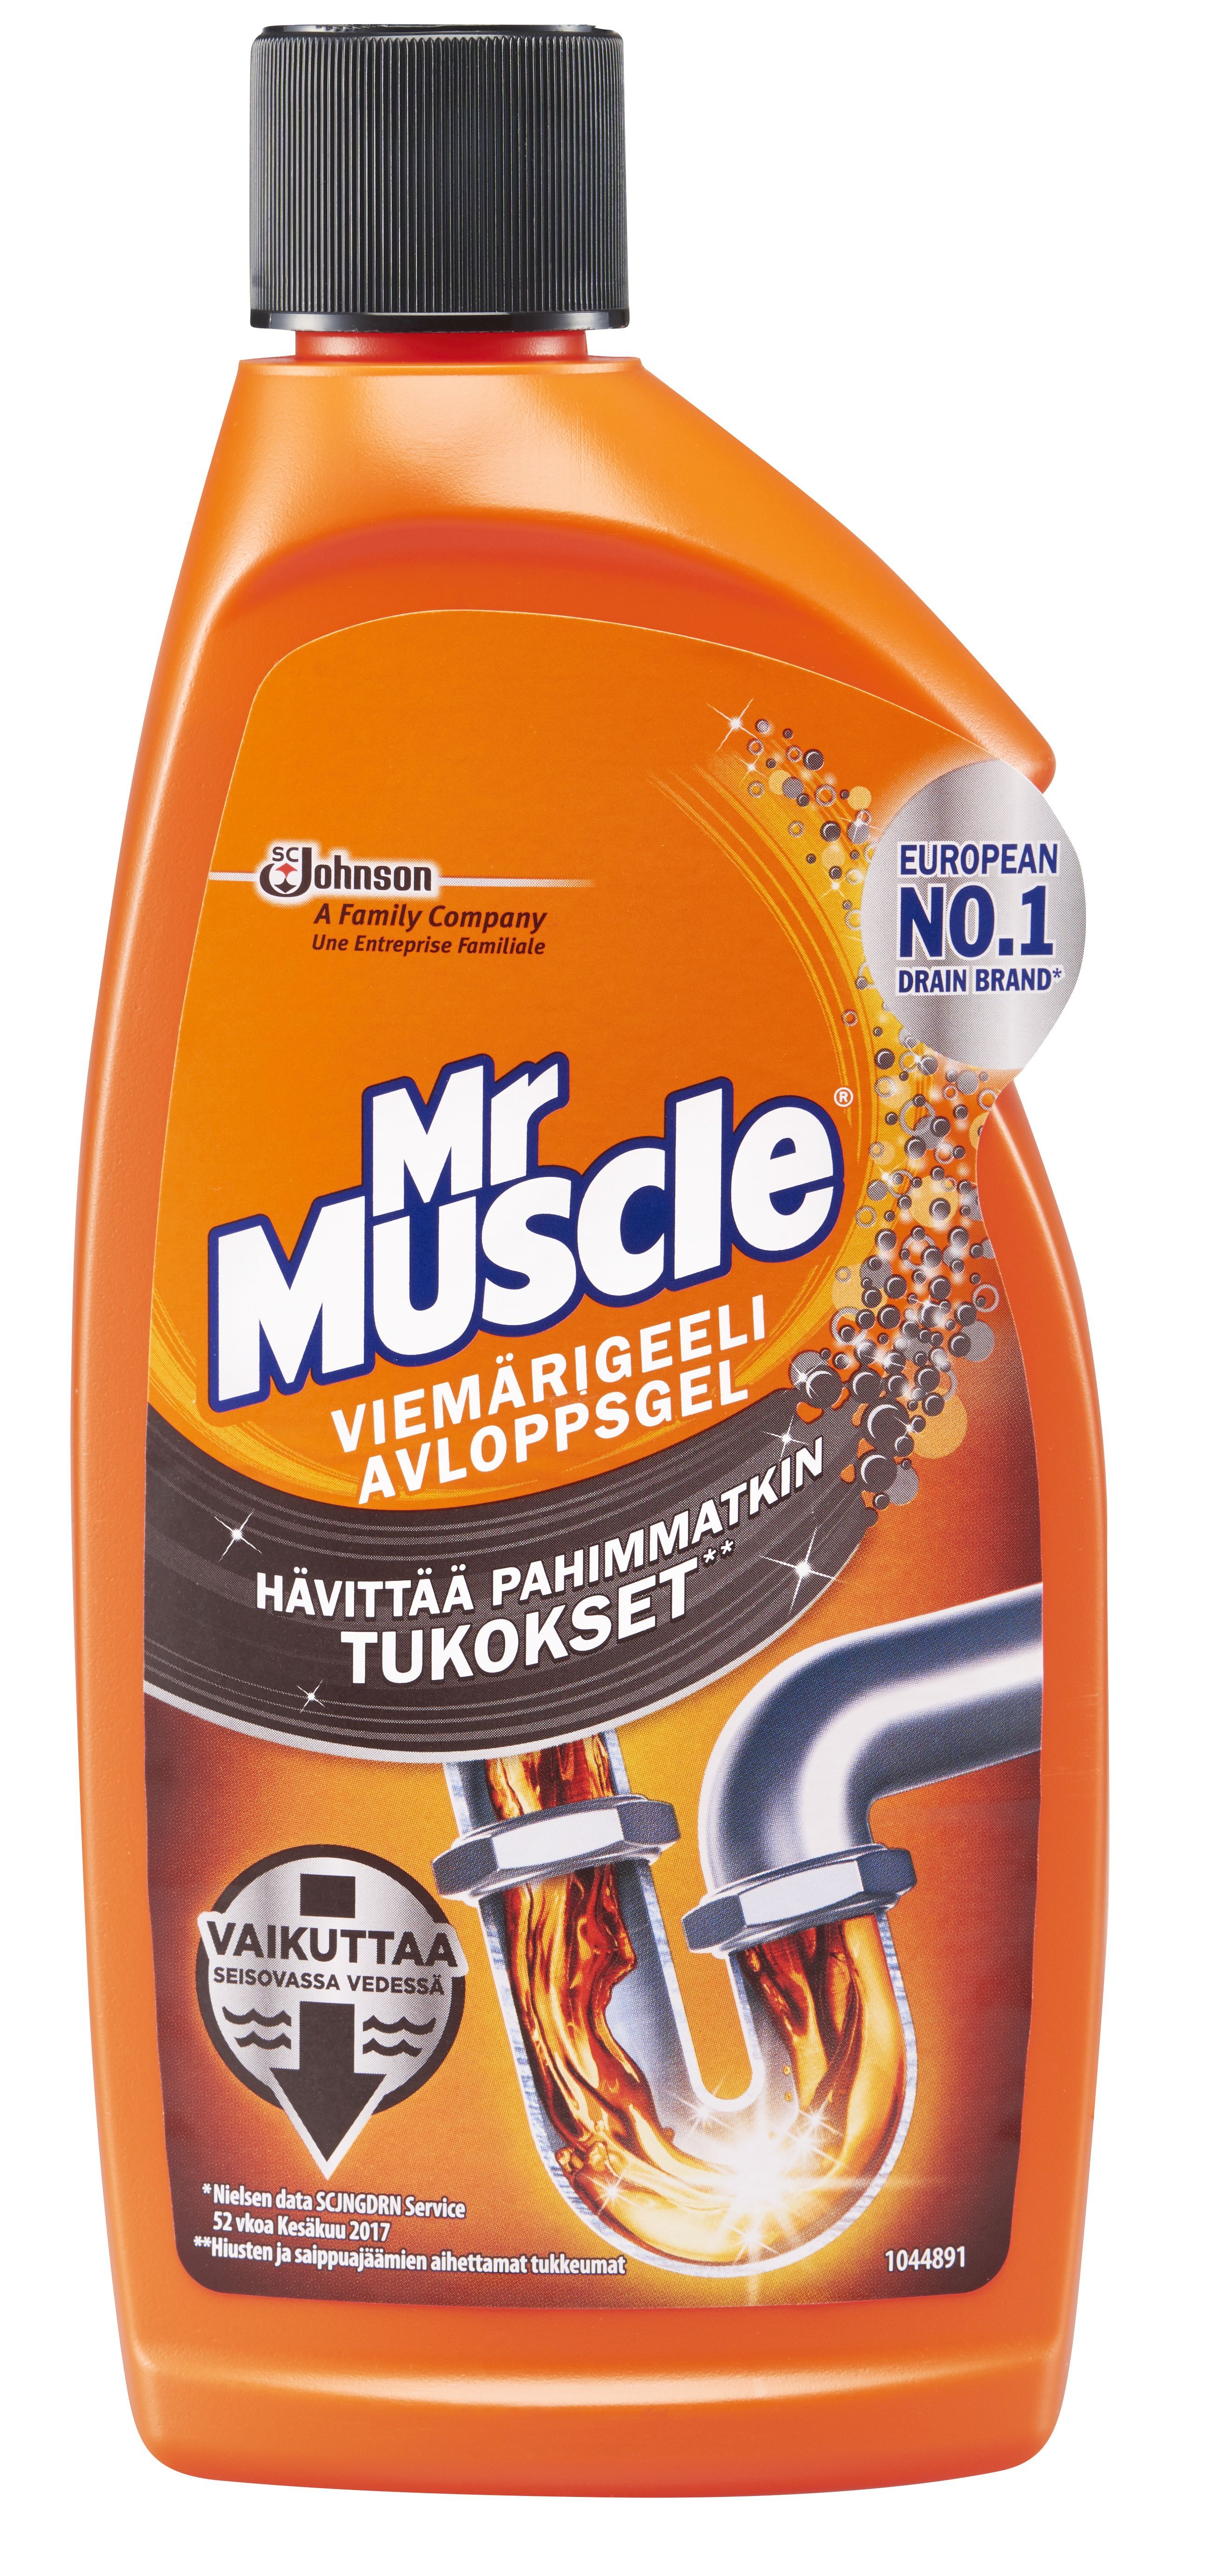 Mr Muscle® Aloppsgel